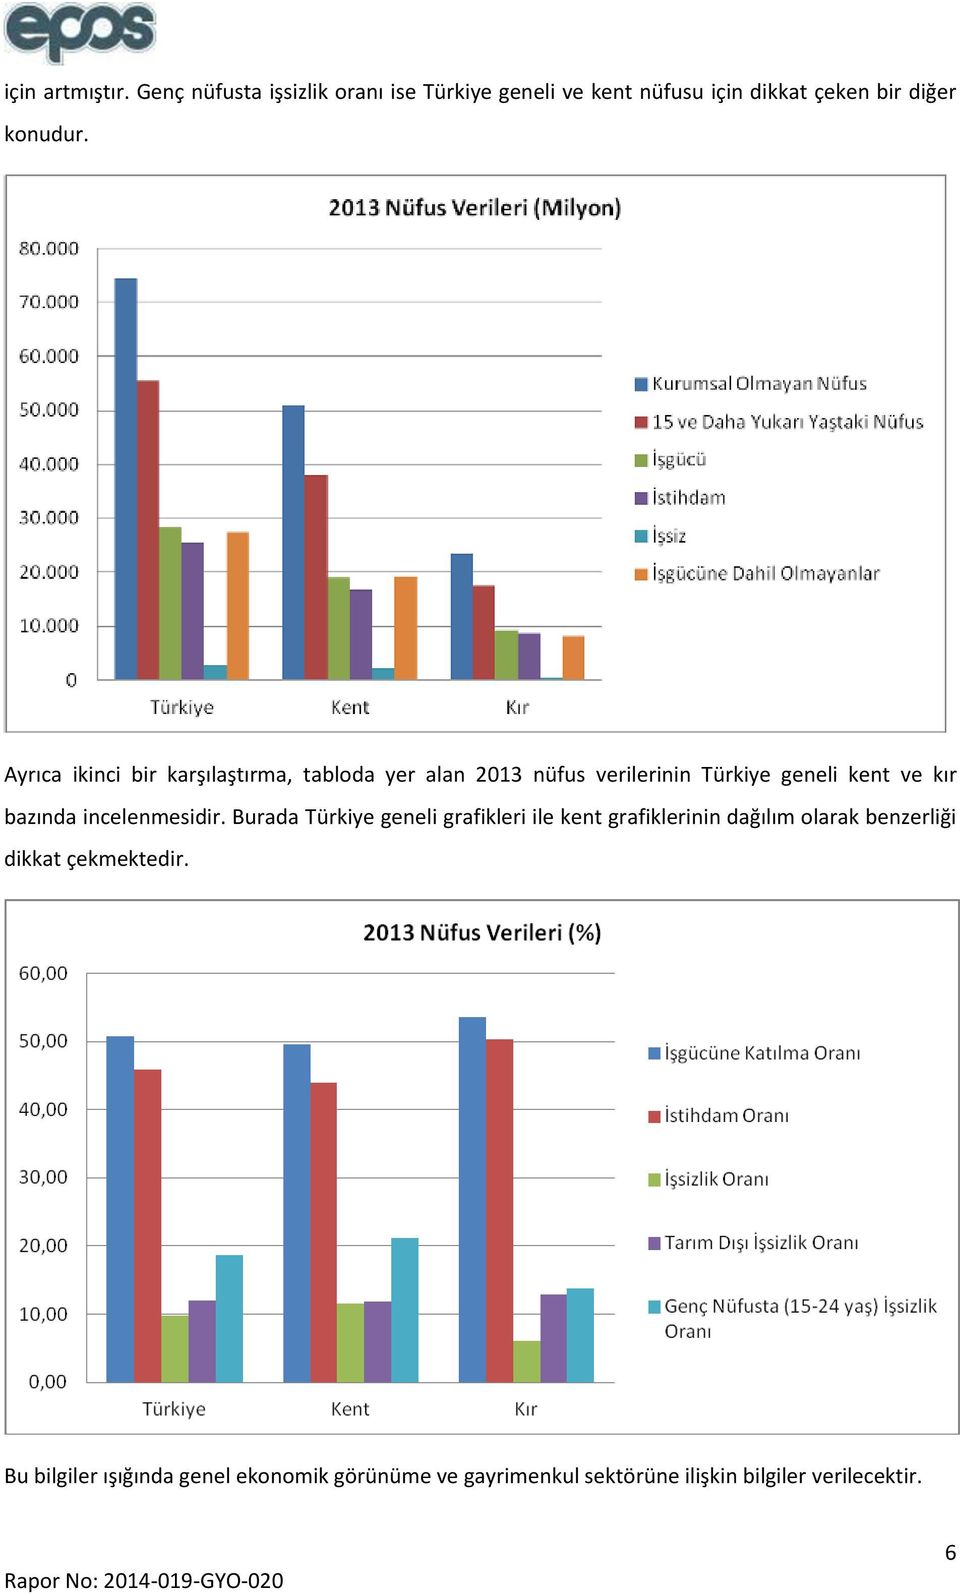 Ayrıca ikinci bir karşılaştırma, tabloda yer alan 2013 nüfus verilerinin Türkiye geneli kent ve kır bazında